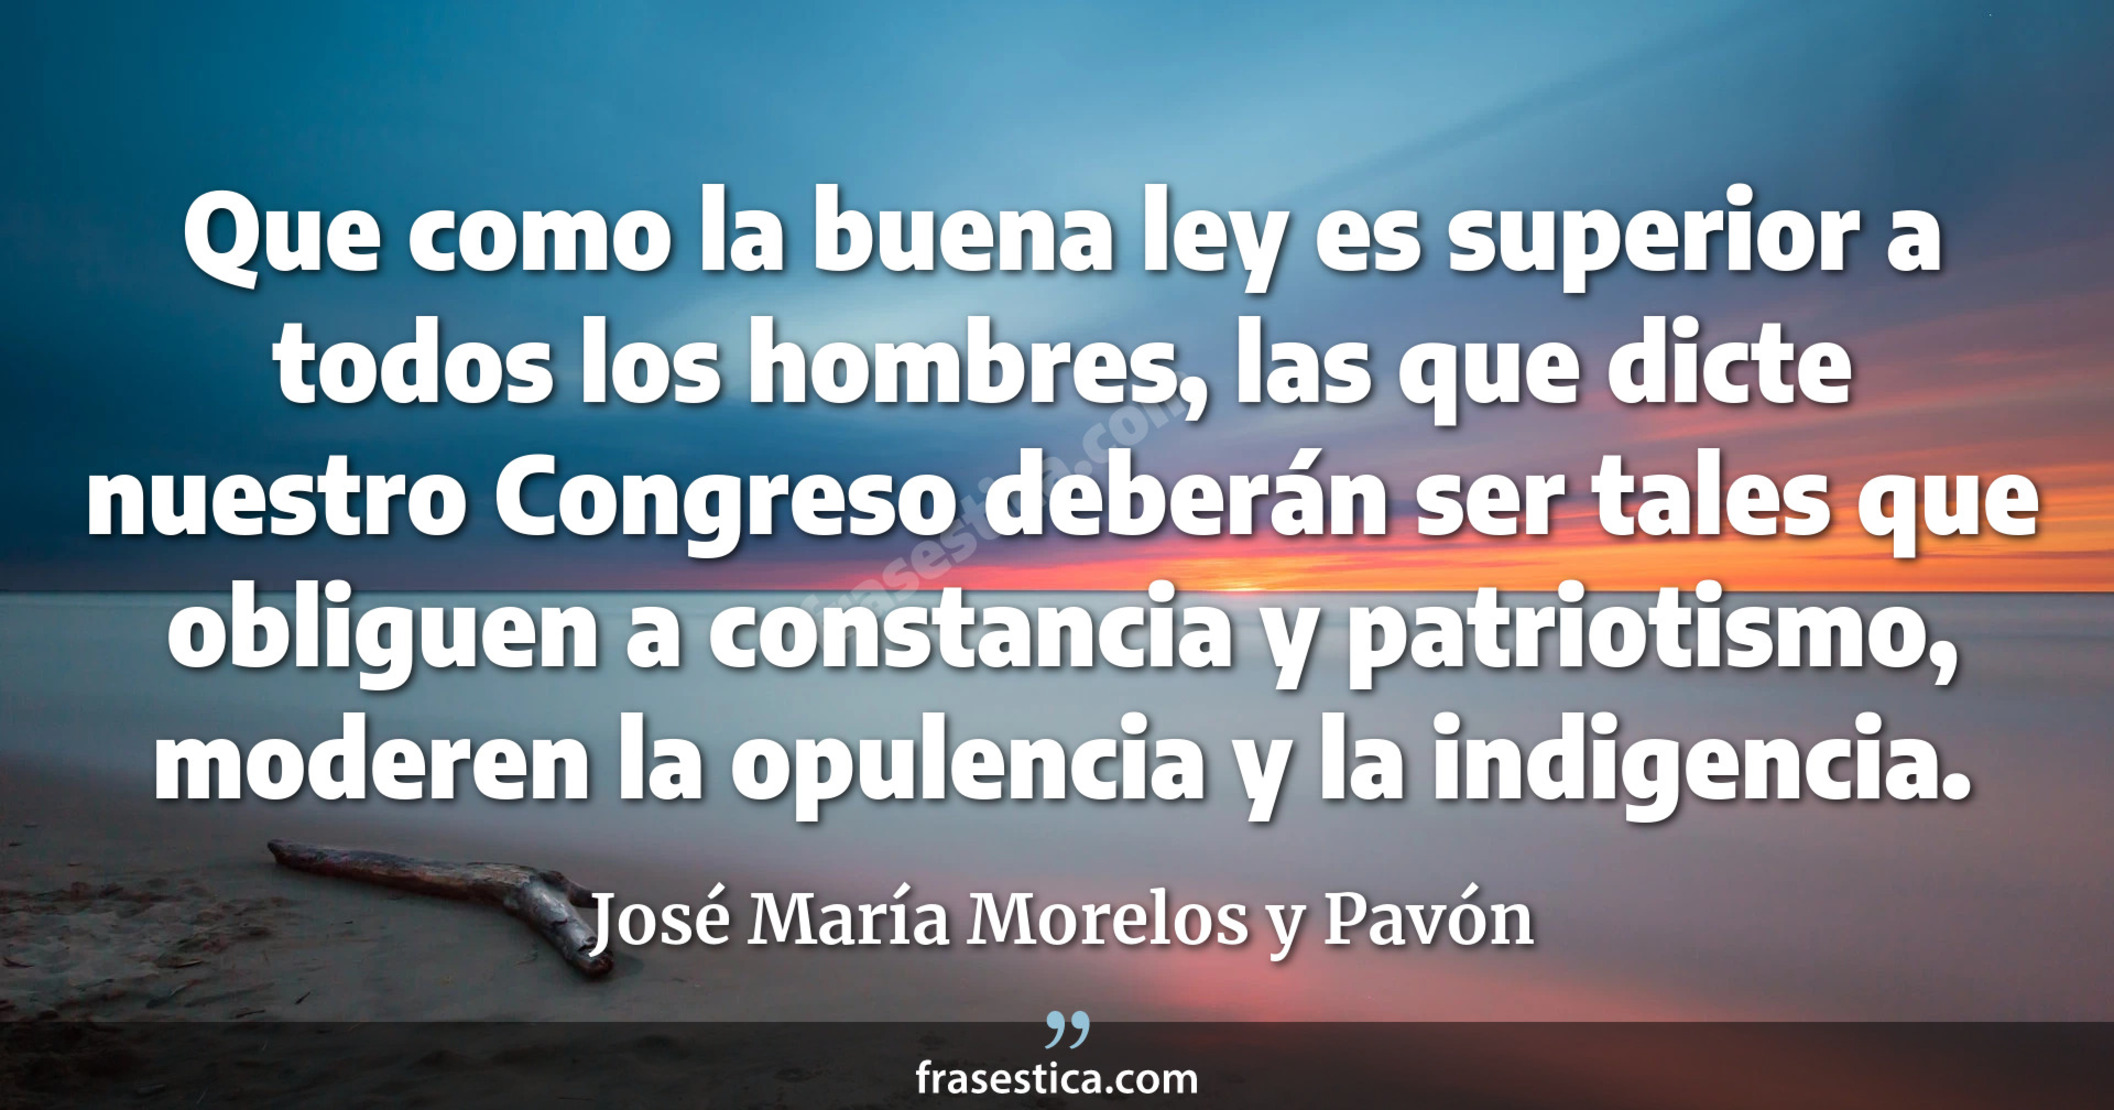 Que como la buena ley es superior a todos los hombres, las que dicte nuestro Congreso deberán ser tales que obliguen a constancia y patriotismo, moderen la opulencia y la indigencia. - José María Morelos y Pavón